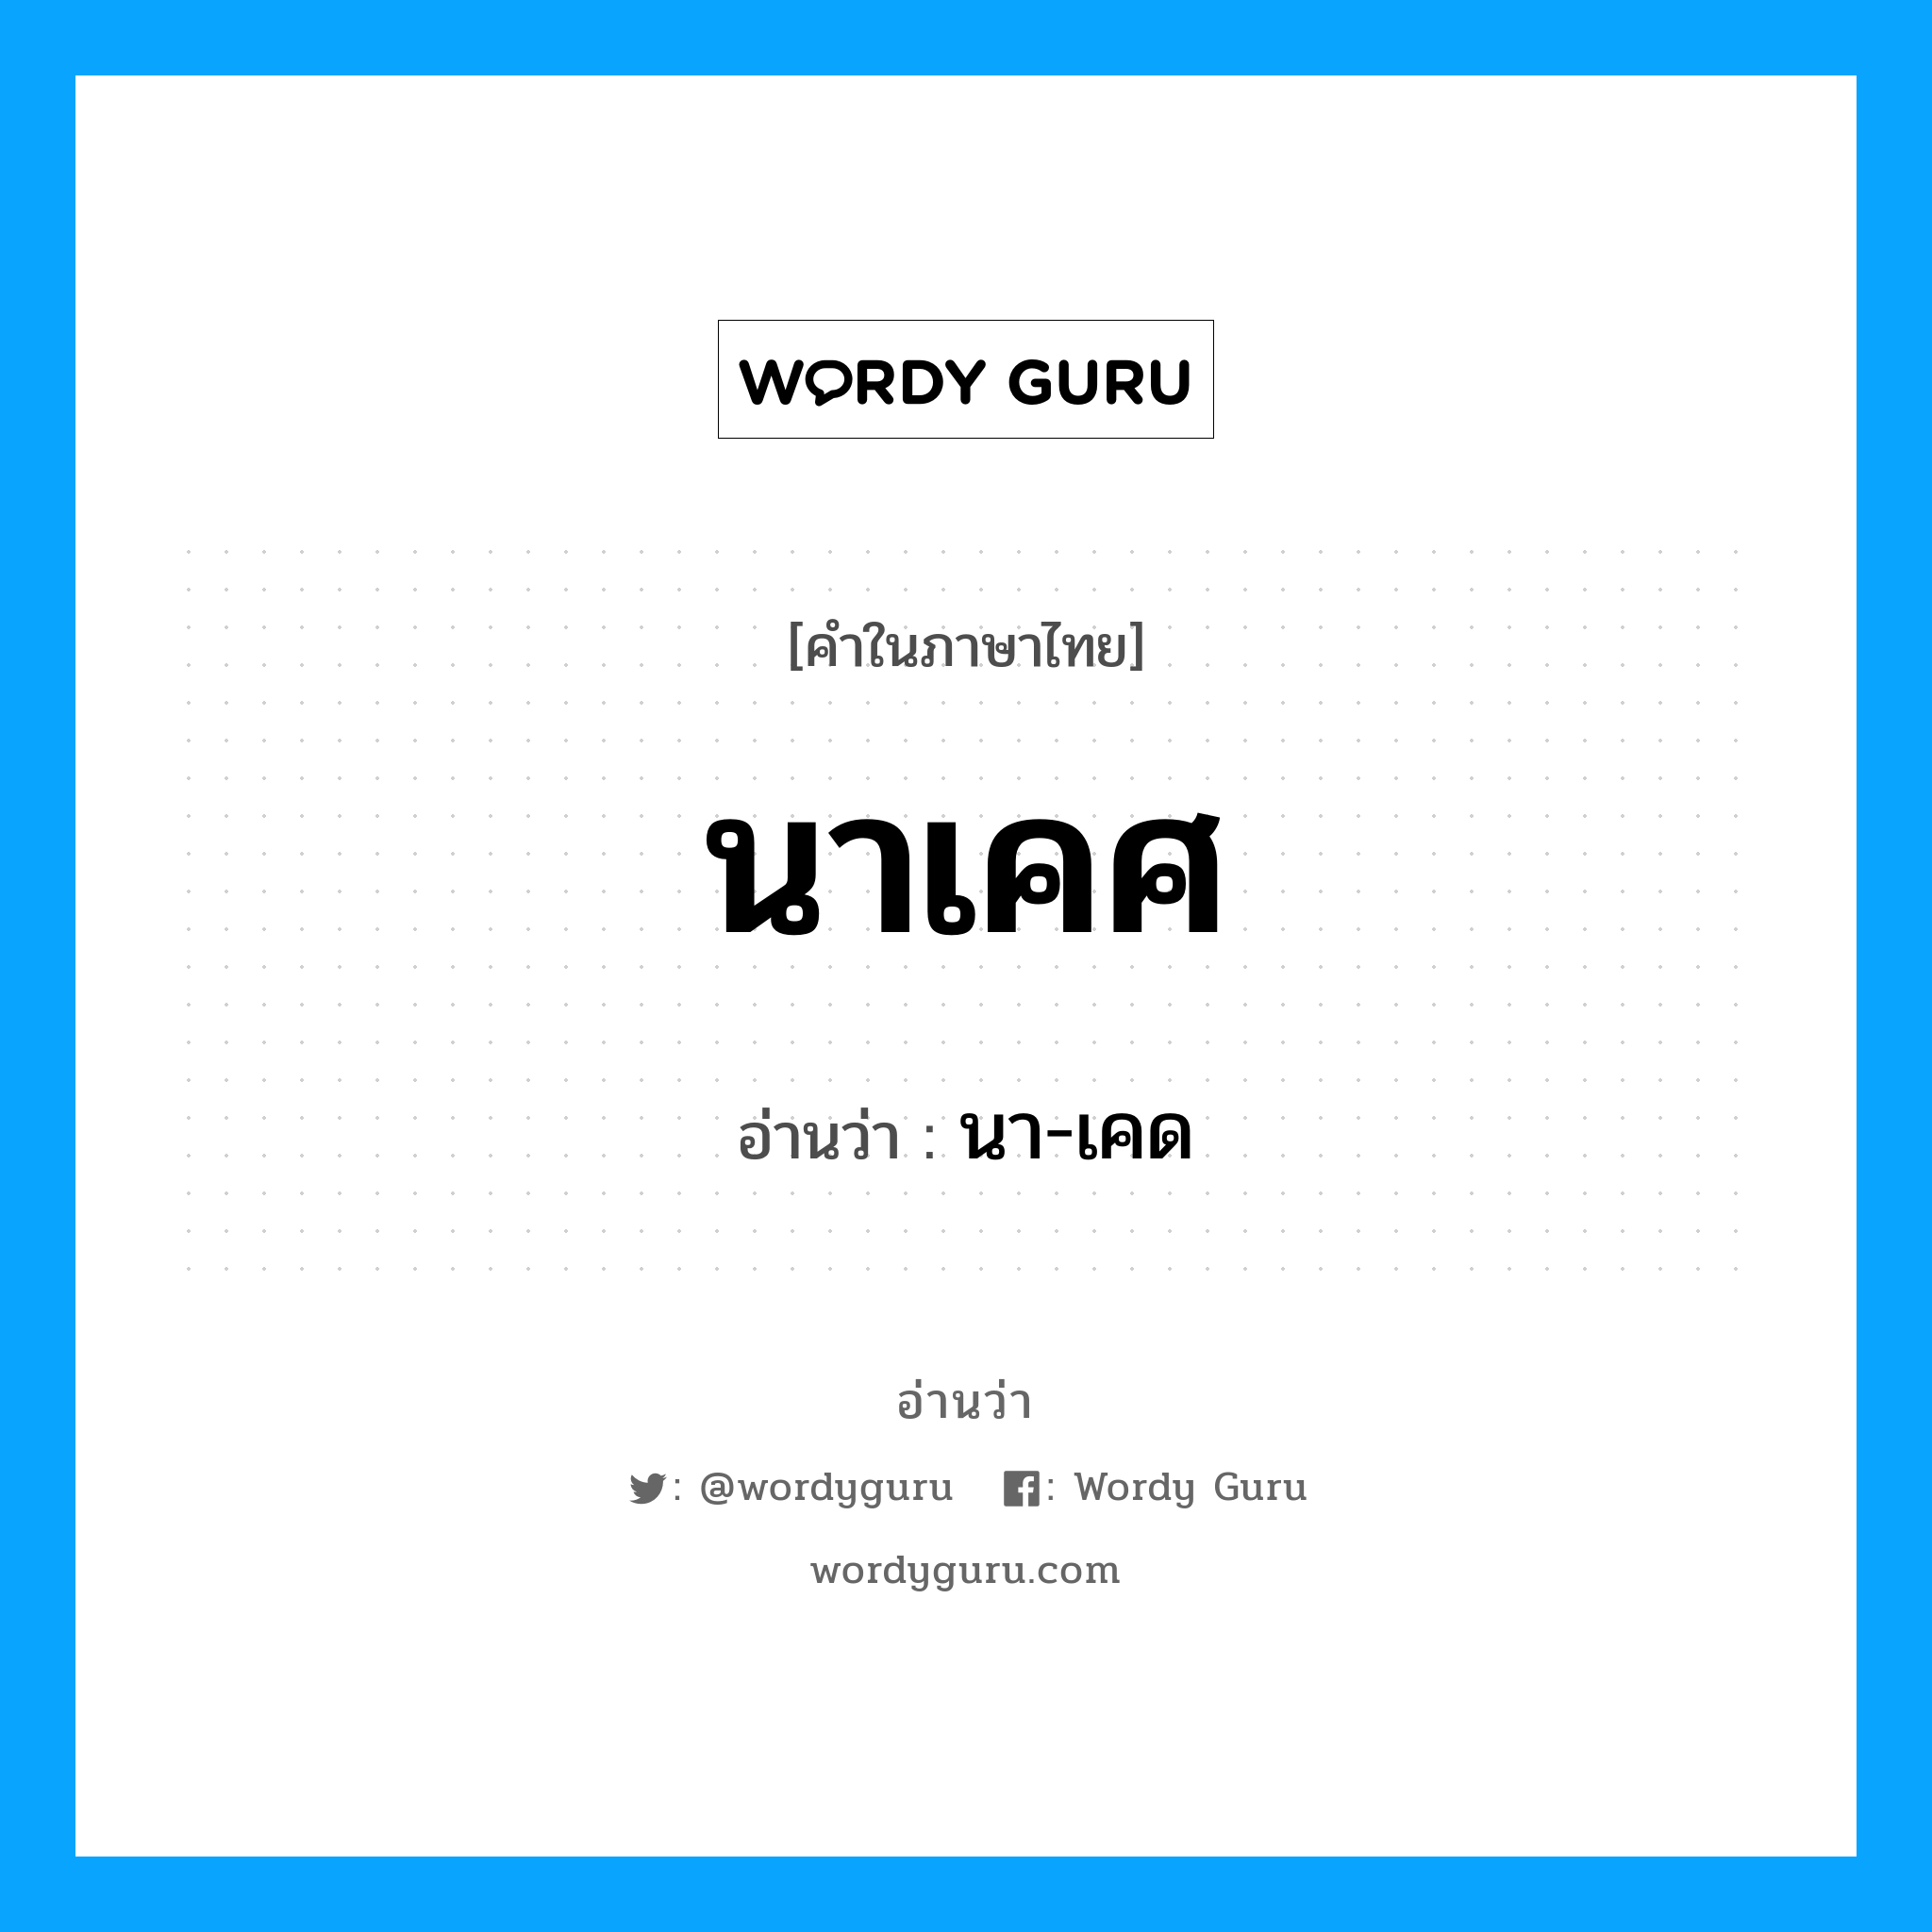 นา-เคด เป็นคำอ่านของคำไหน?, คำในภาษาไทย นา-เคด อ่านว่า นาเคศ